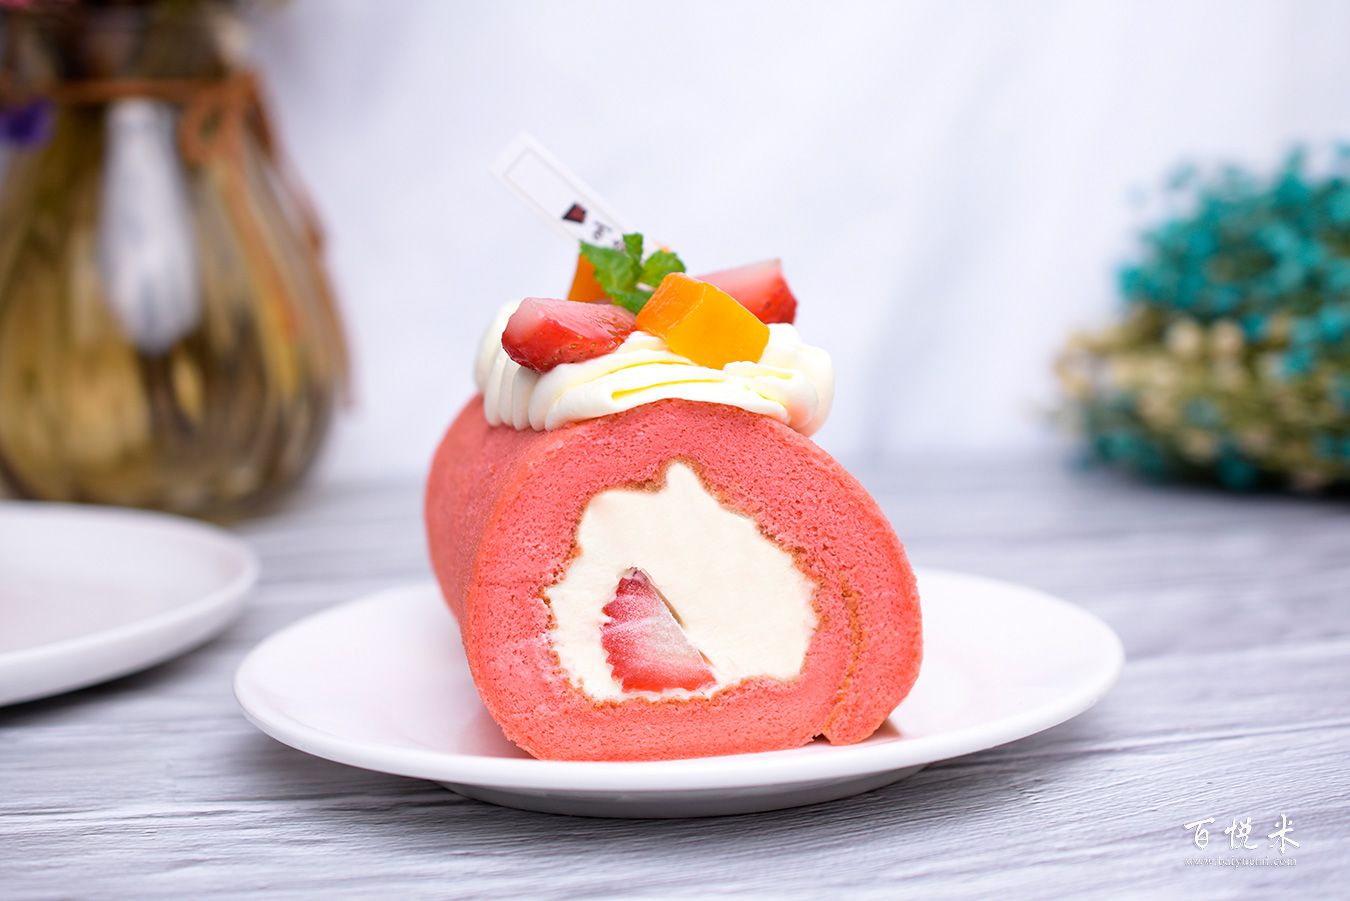 红丝绒蛋糕卷高清图片大全【蛋糕图片】_560